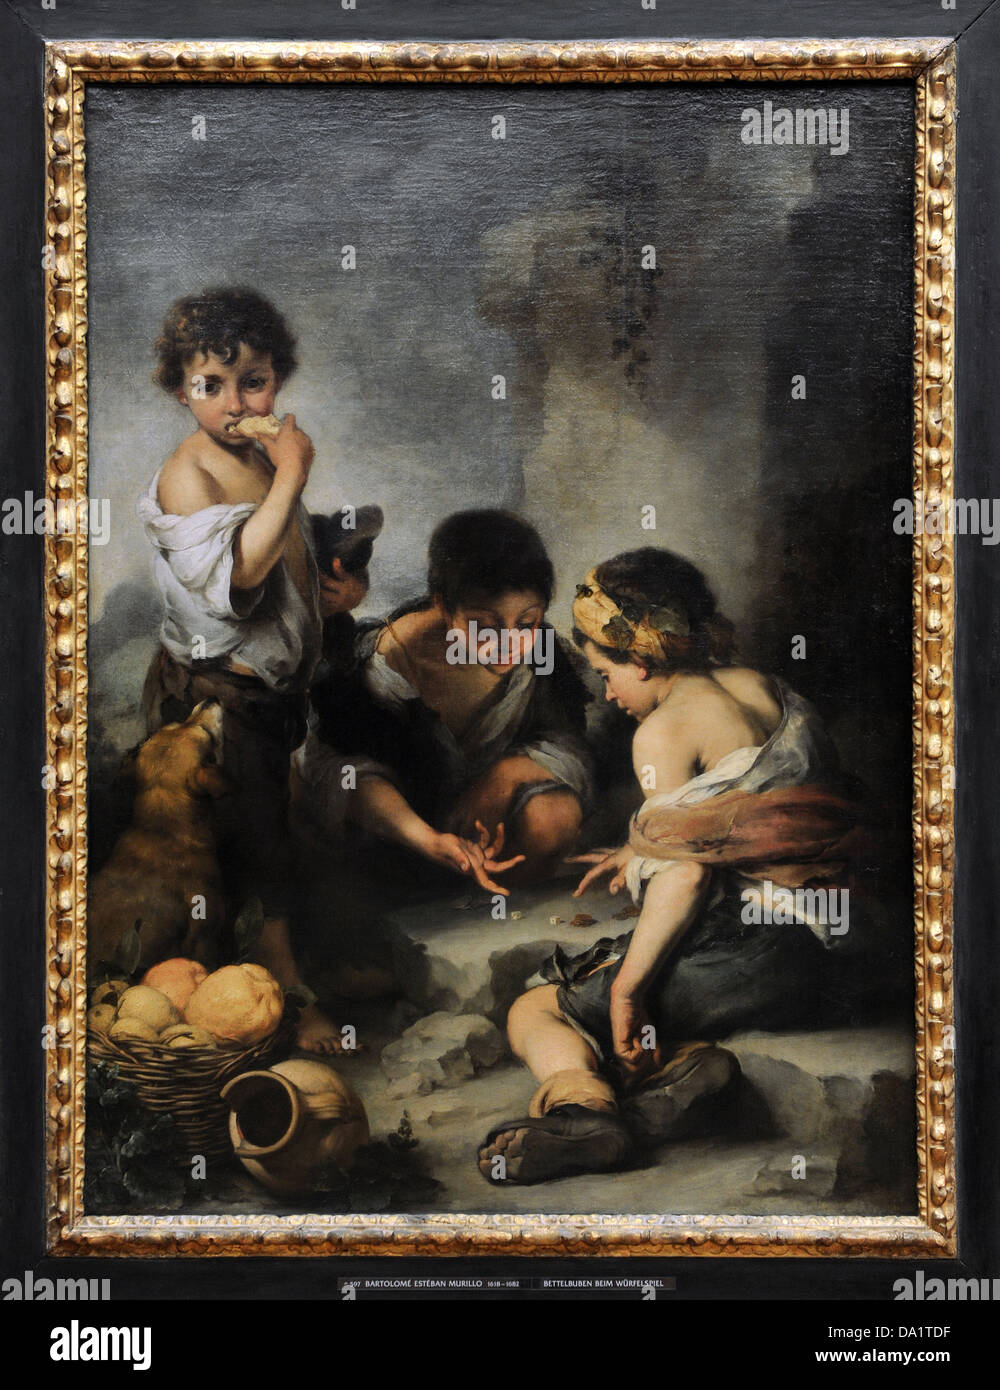 Bartolomé Esteban Murillo (1618-1682). Spanischer Maler. Bettler-Jungs beim Würfelspiel, 1675. Alte Pinakothek. München. Deutschland. Stockfoto